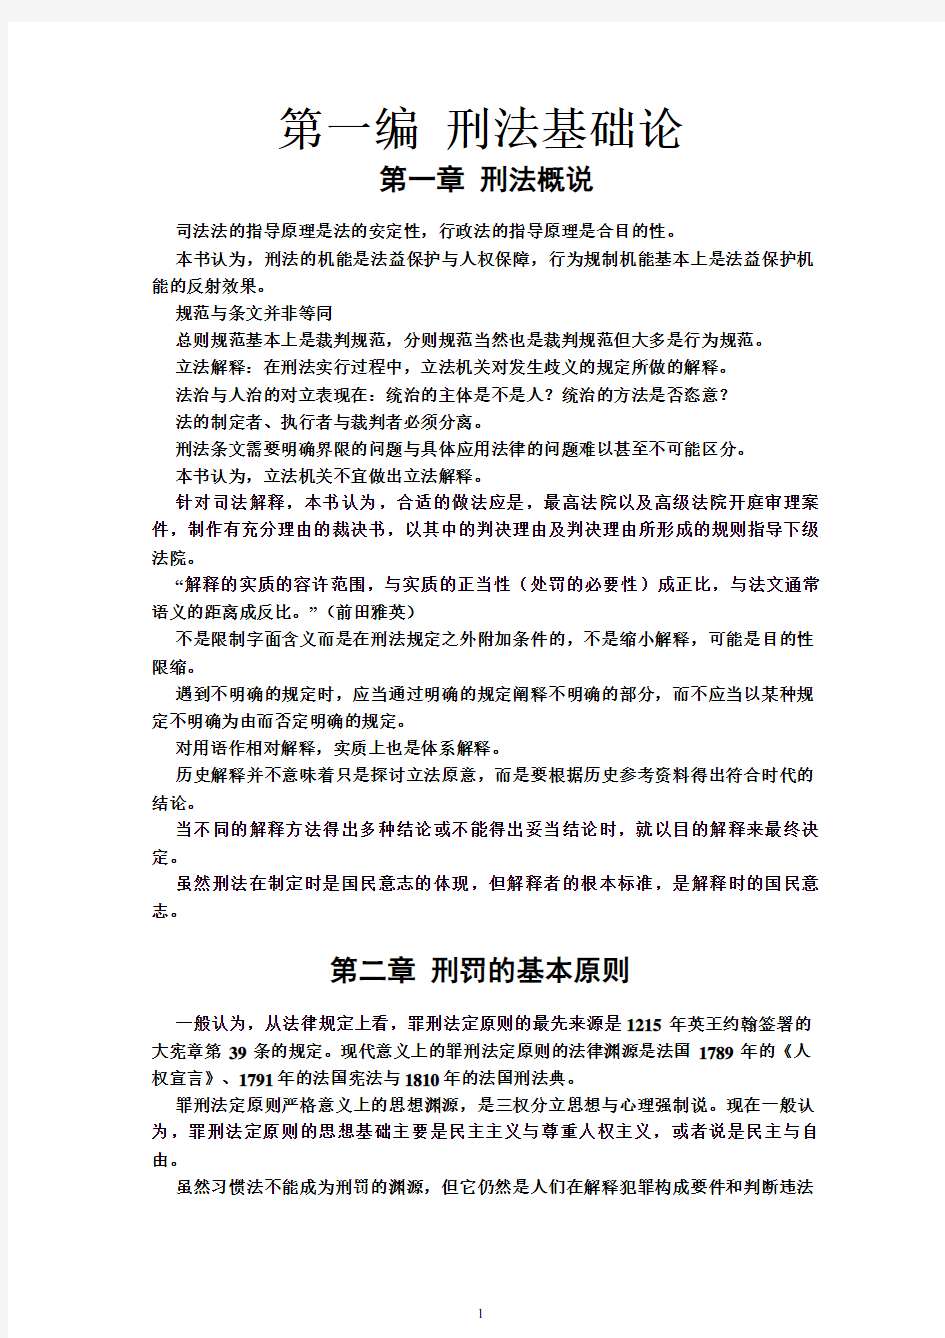 张明楷《刑法学》笔记整理最新第五版